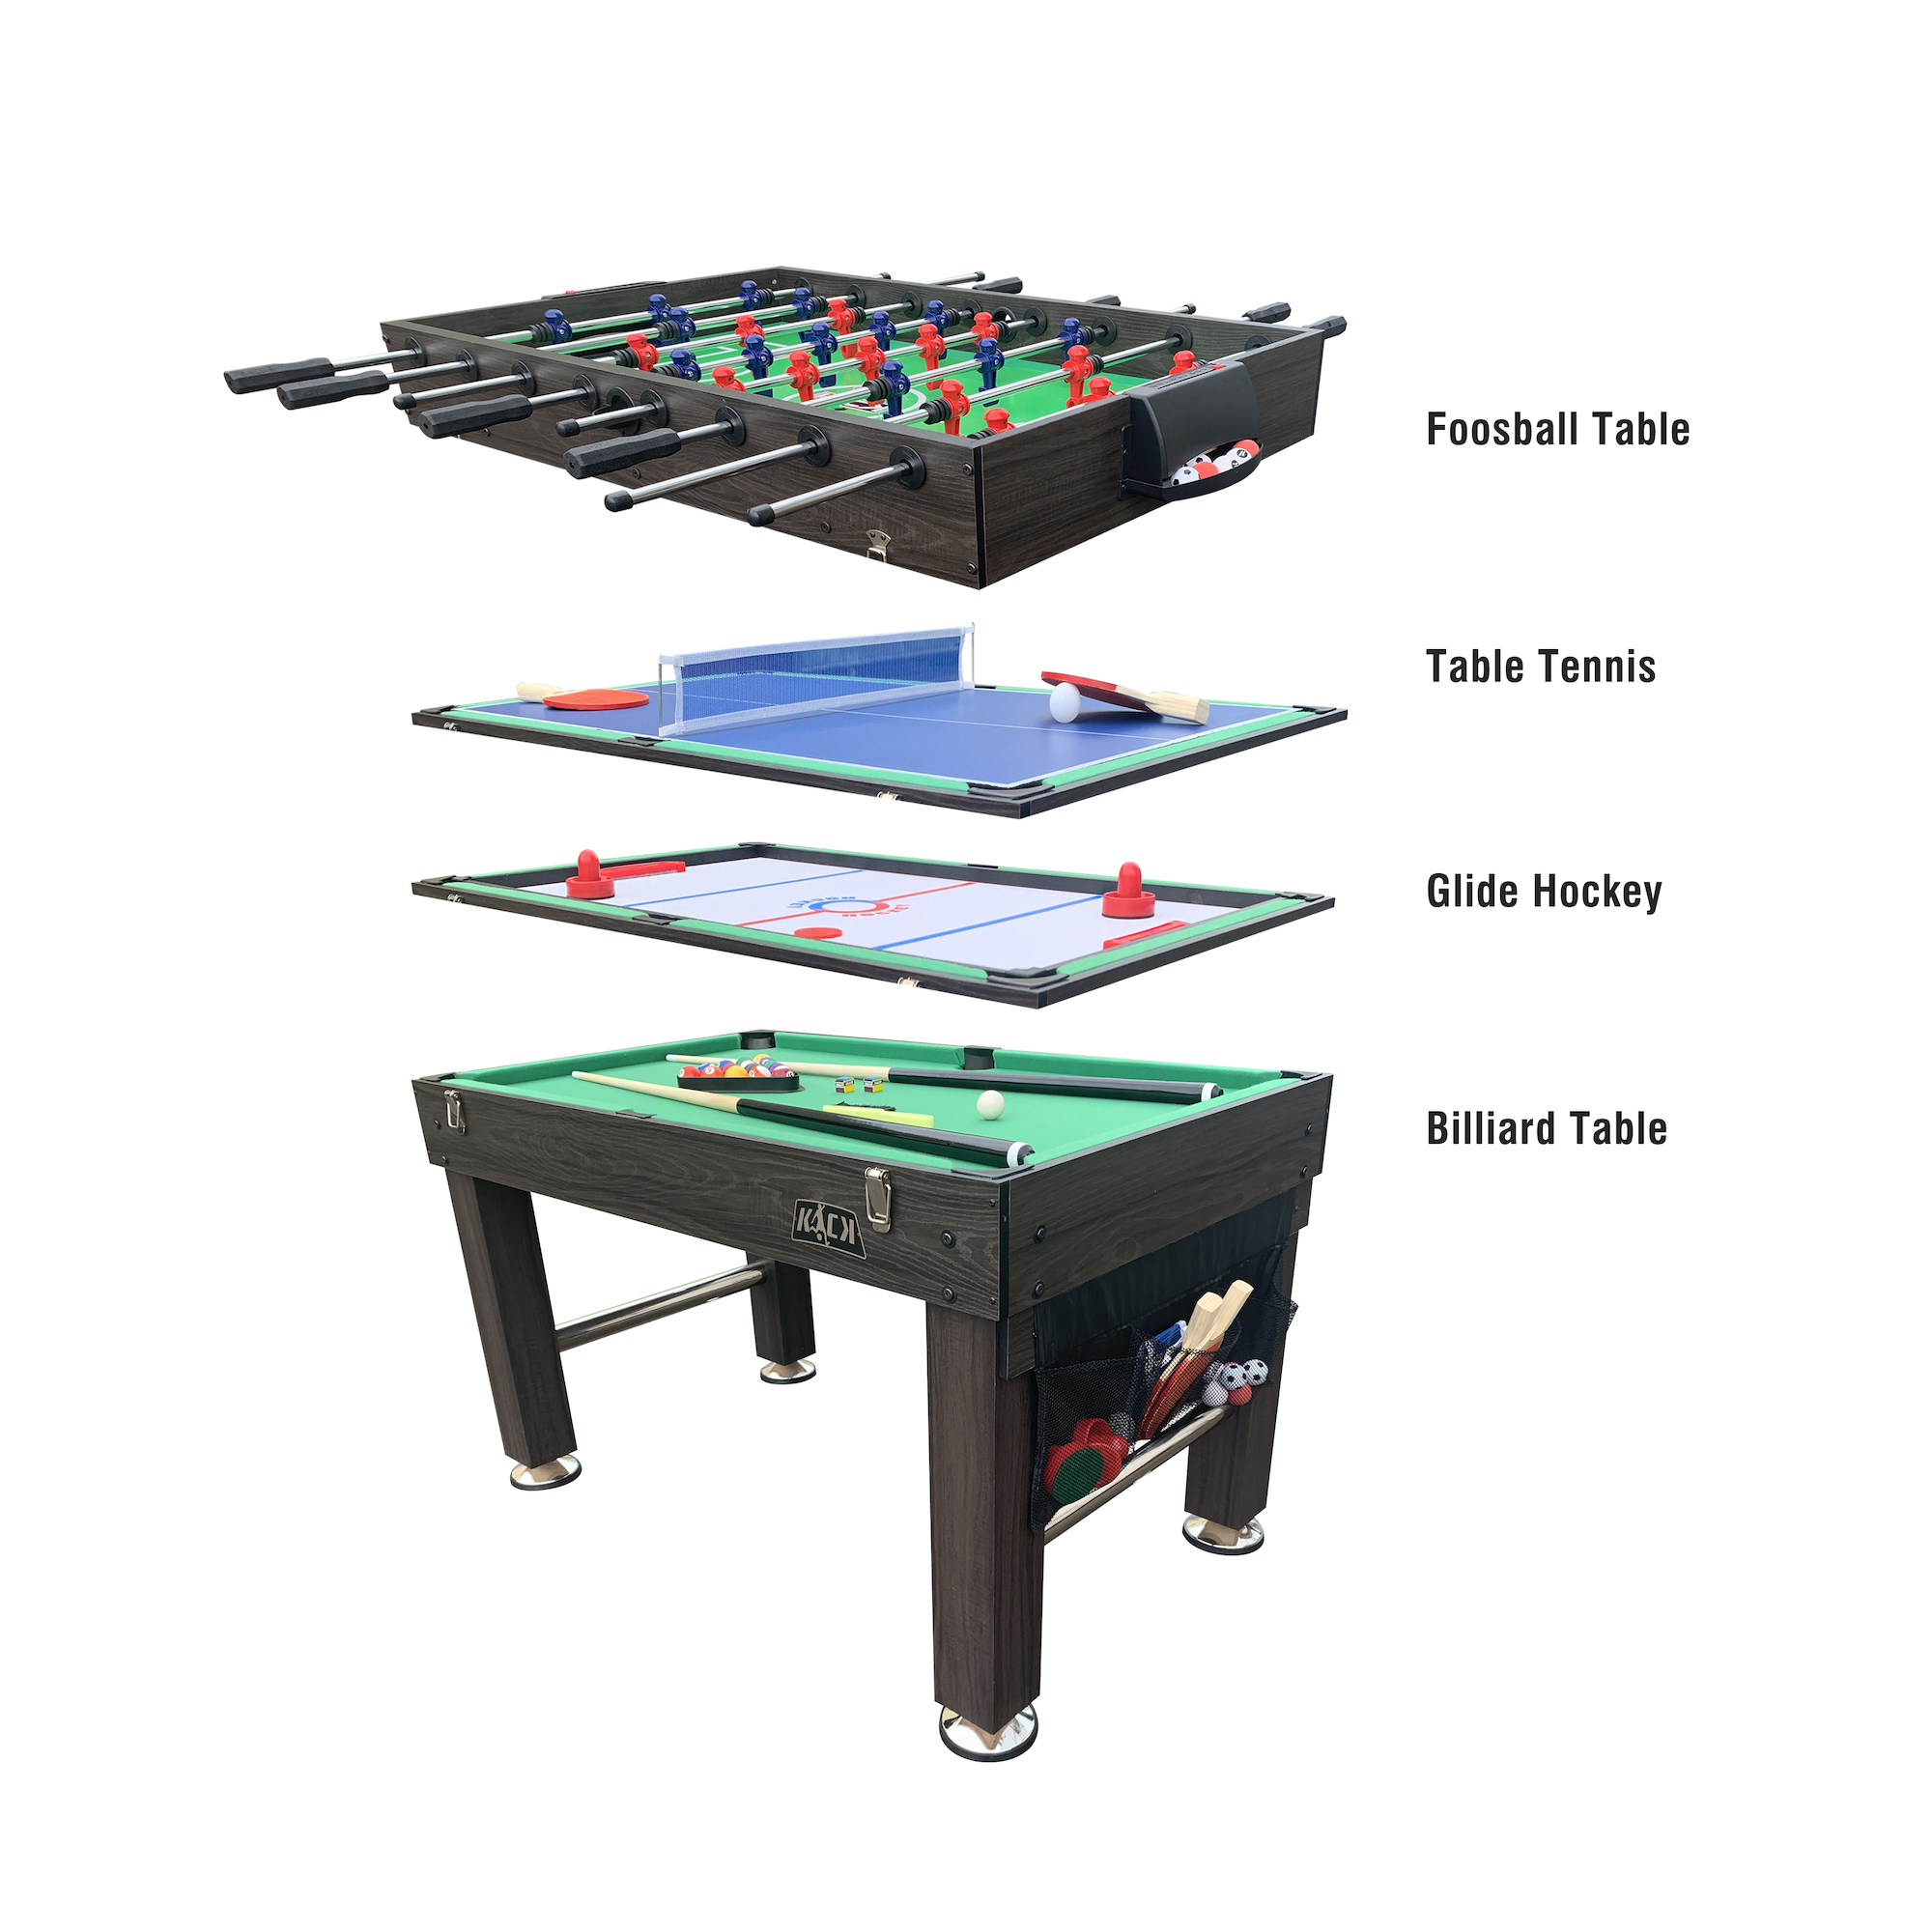 KICK Tetrad 55 4-in-1 Multi Game Table (Brown)